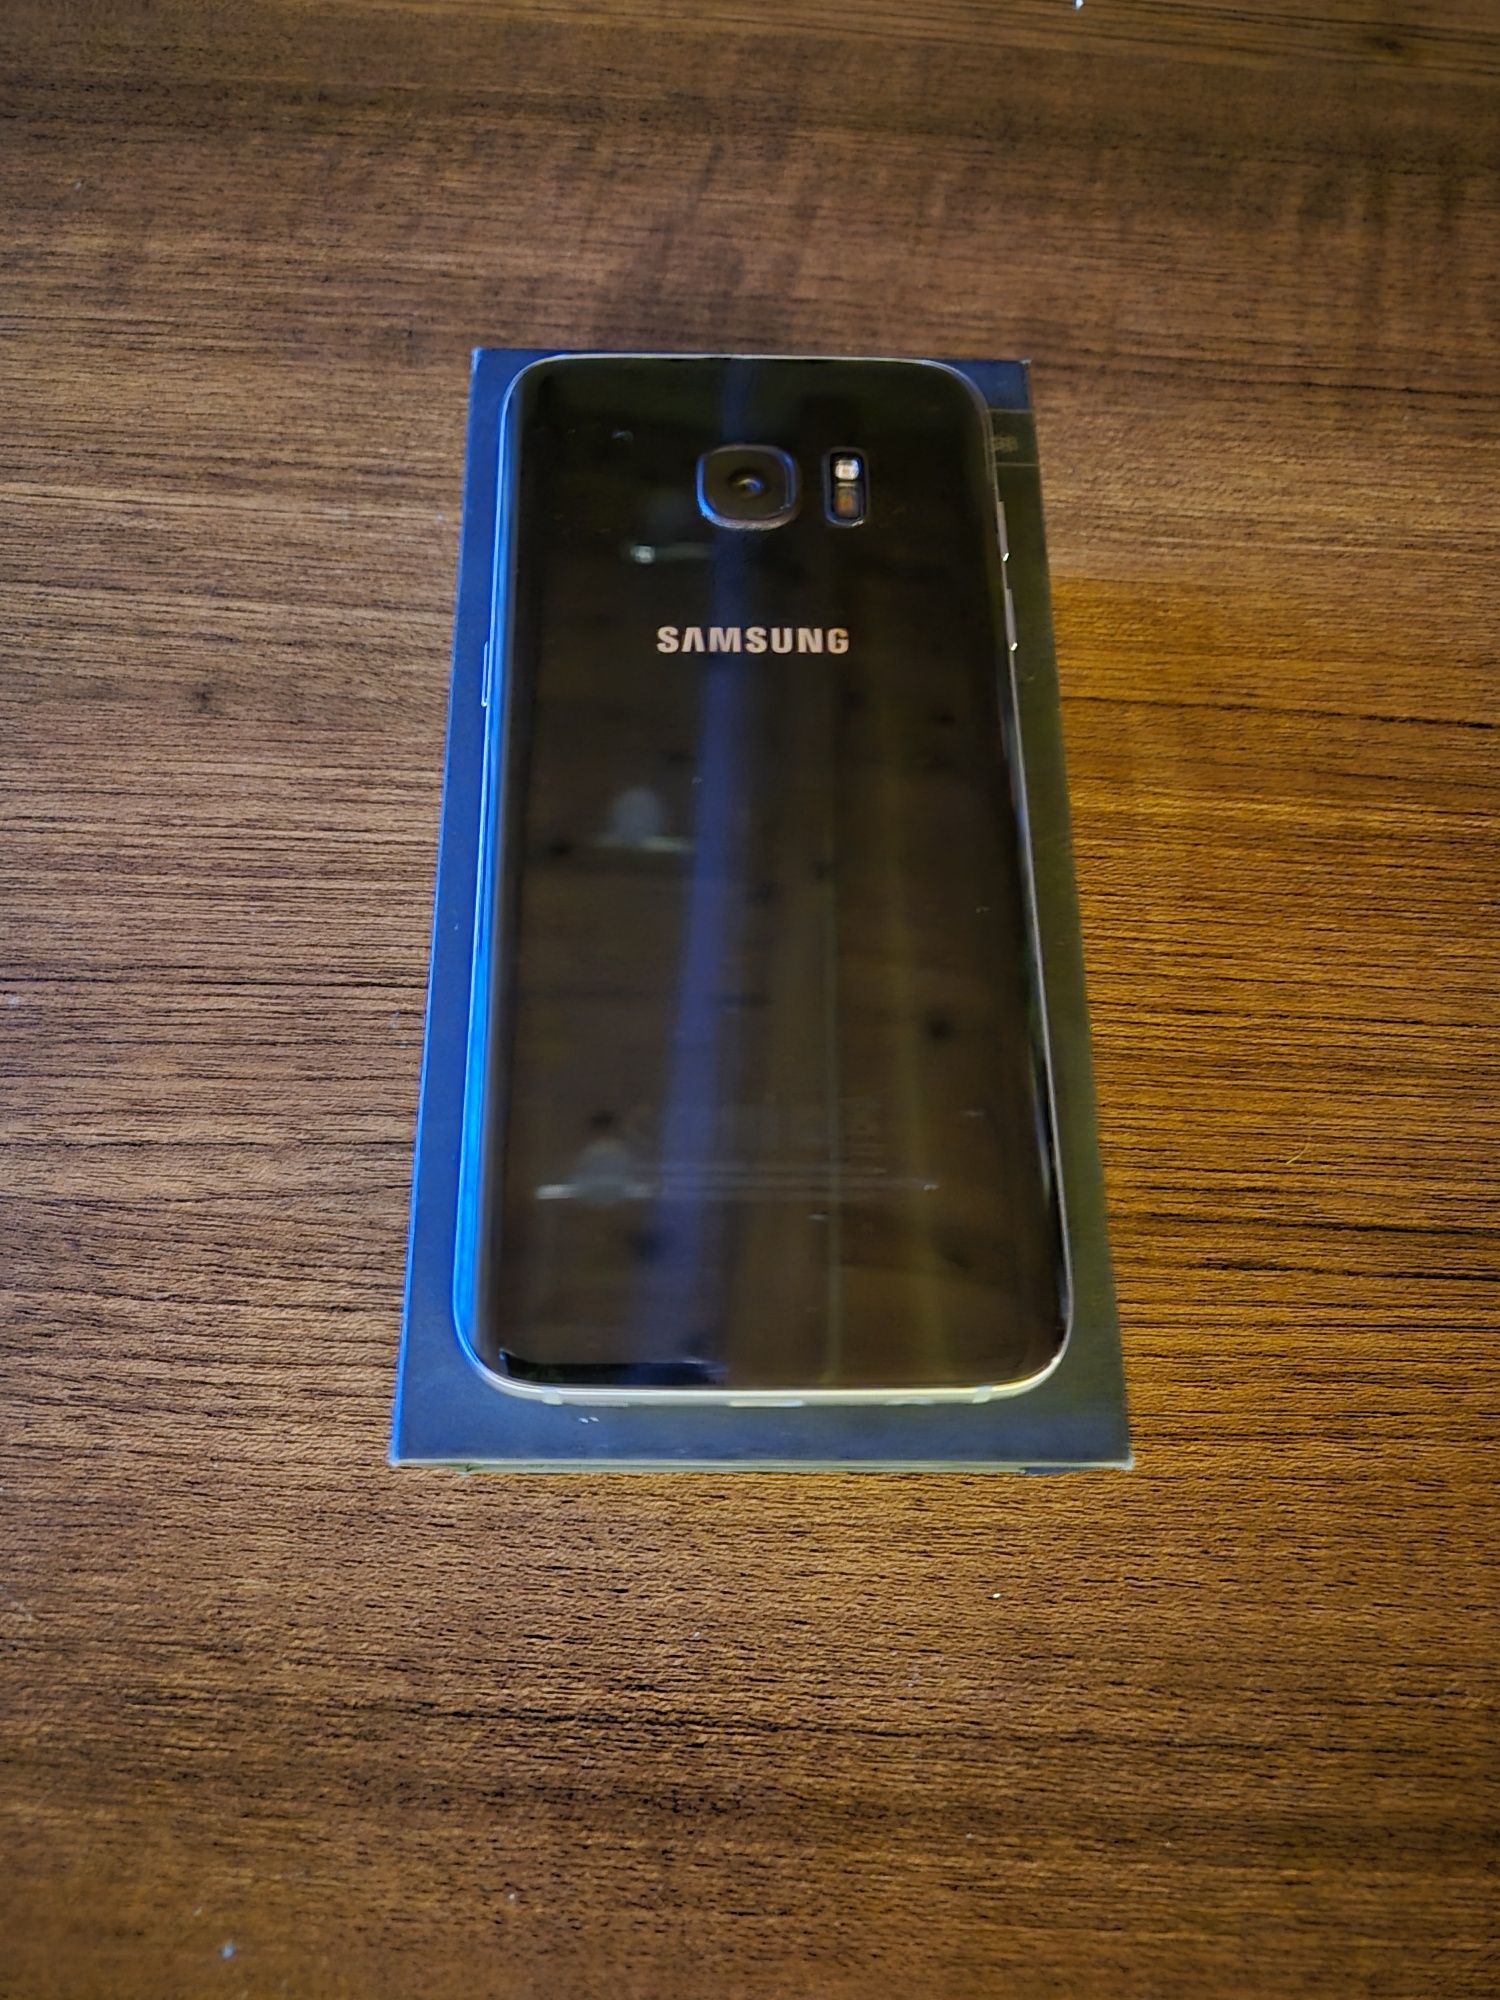 Sumsung Galaxy S7 edge